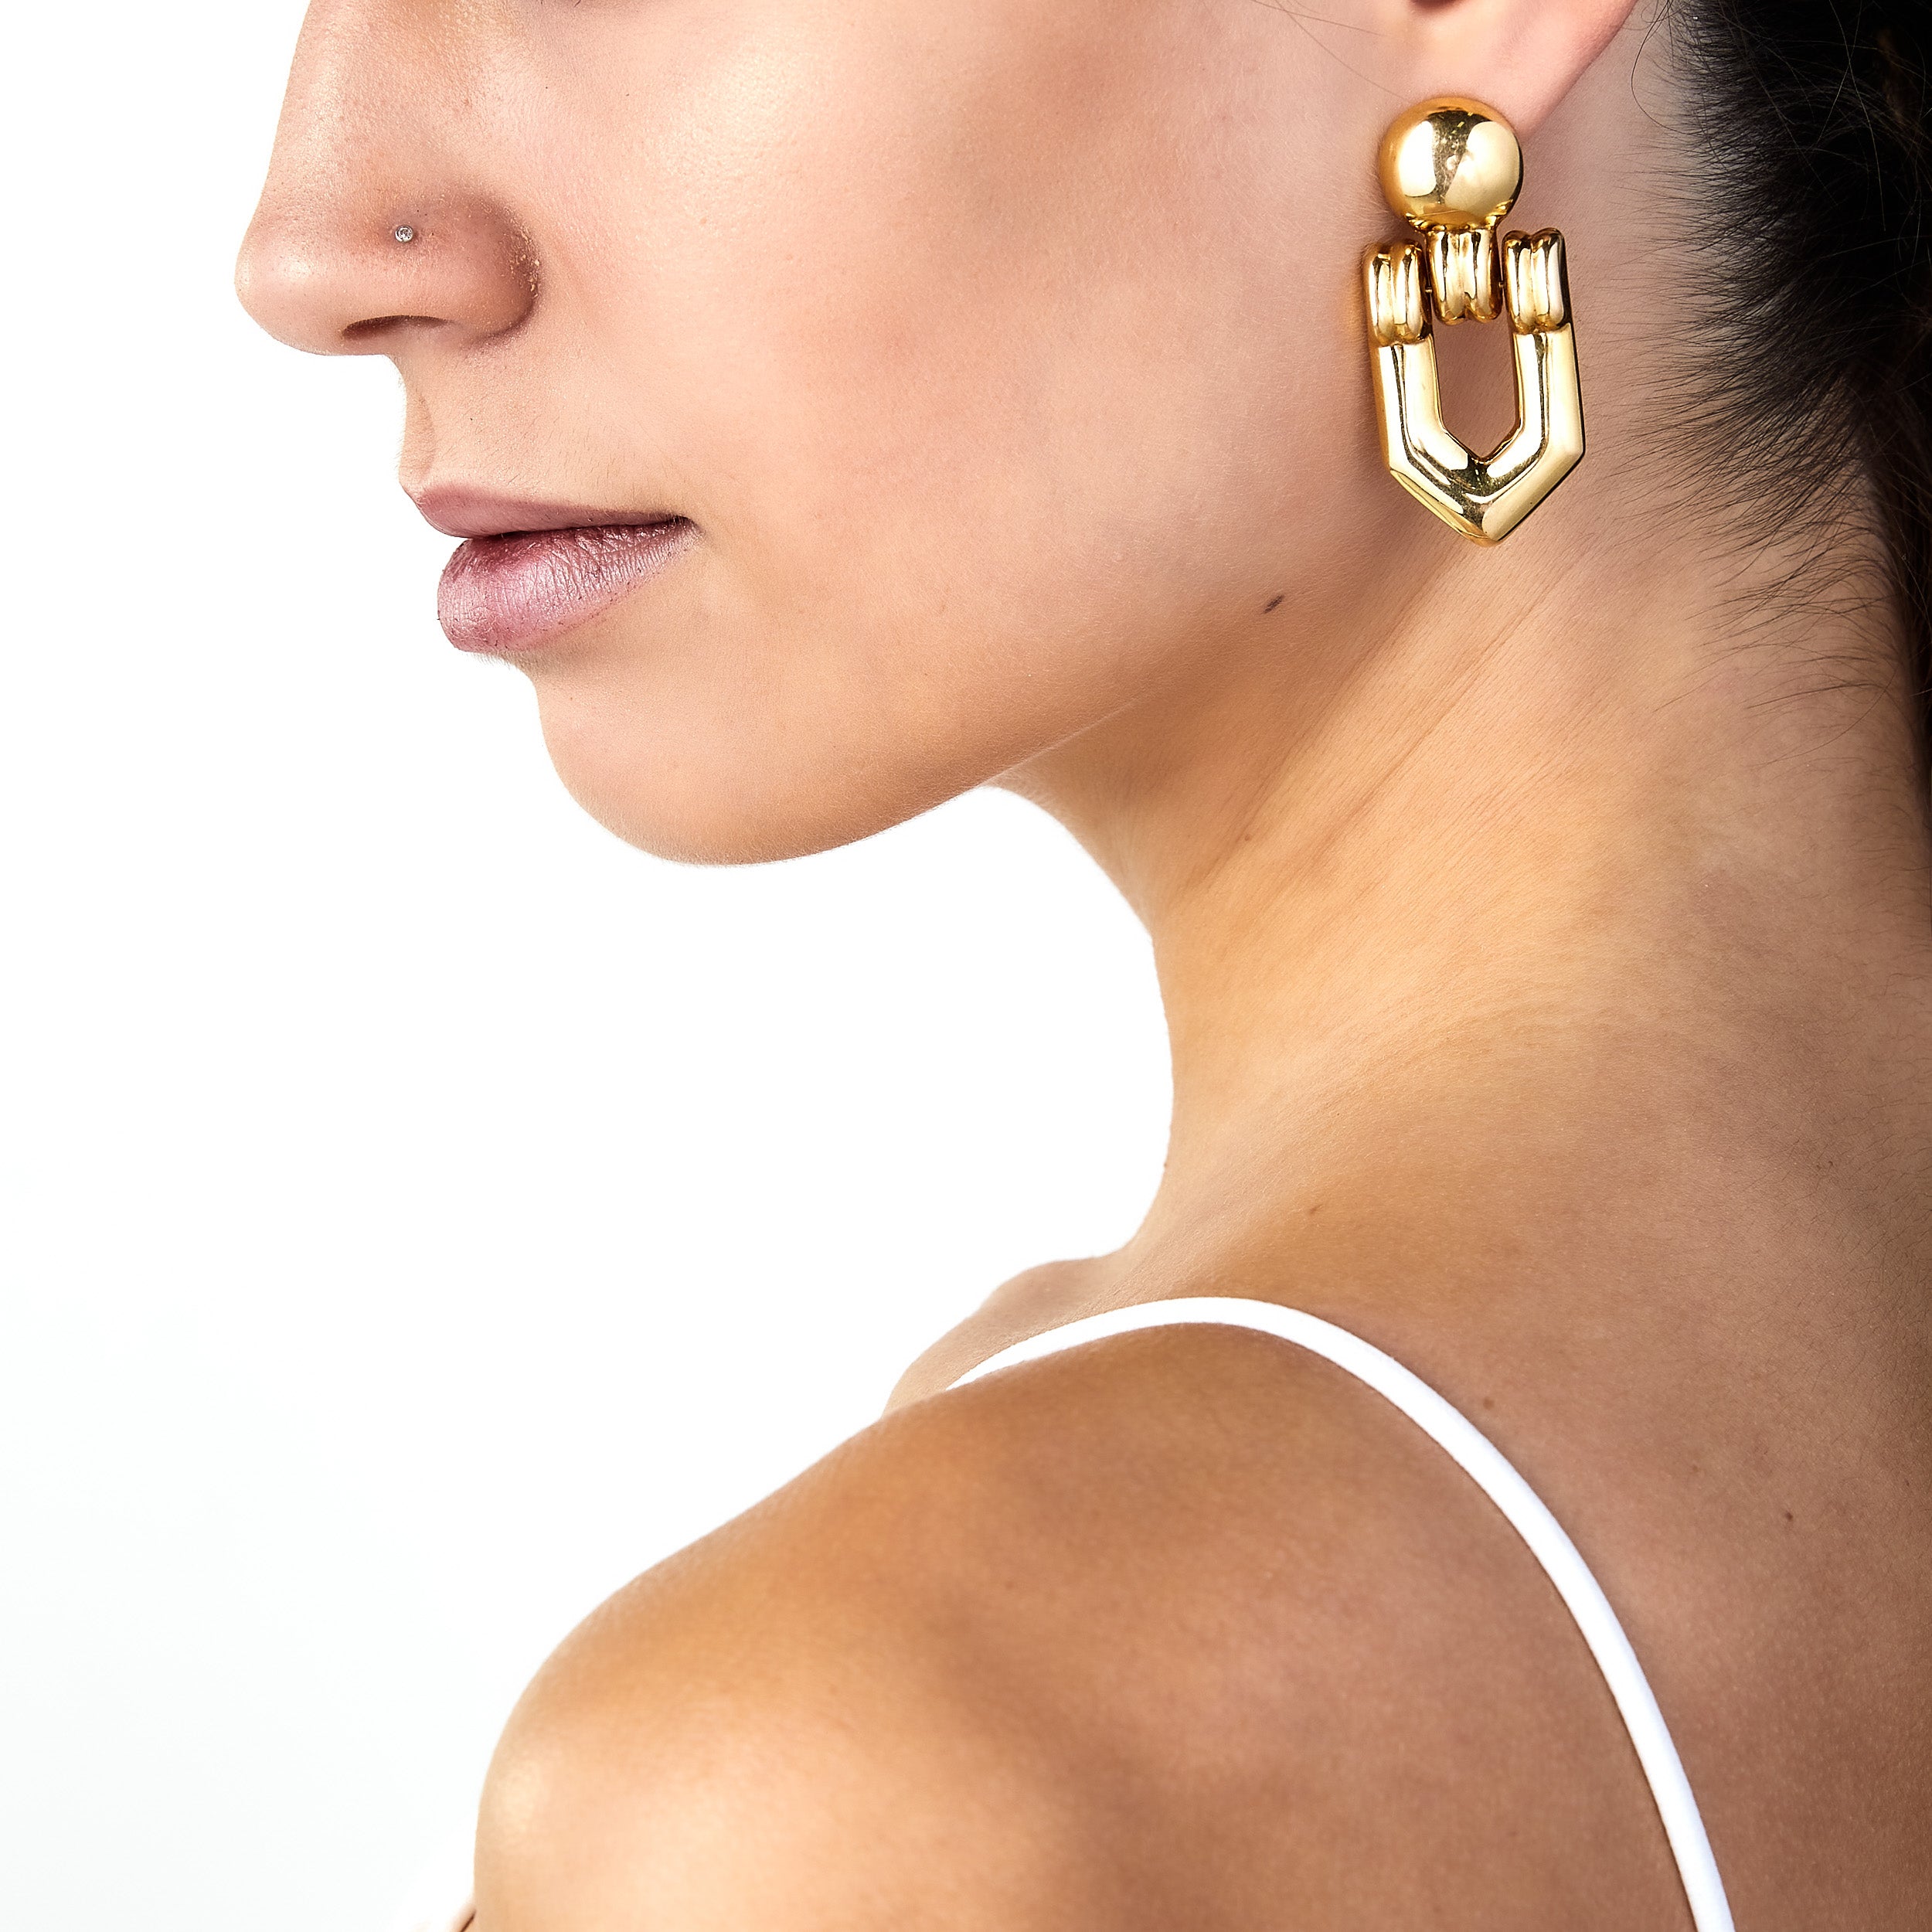 intage gold door knocker earring worn on woman’s ear.